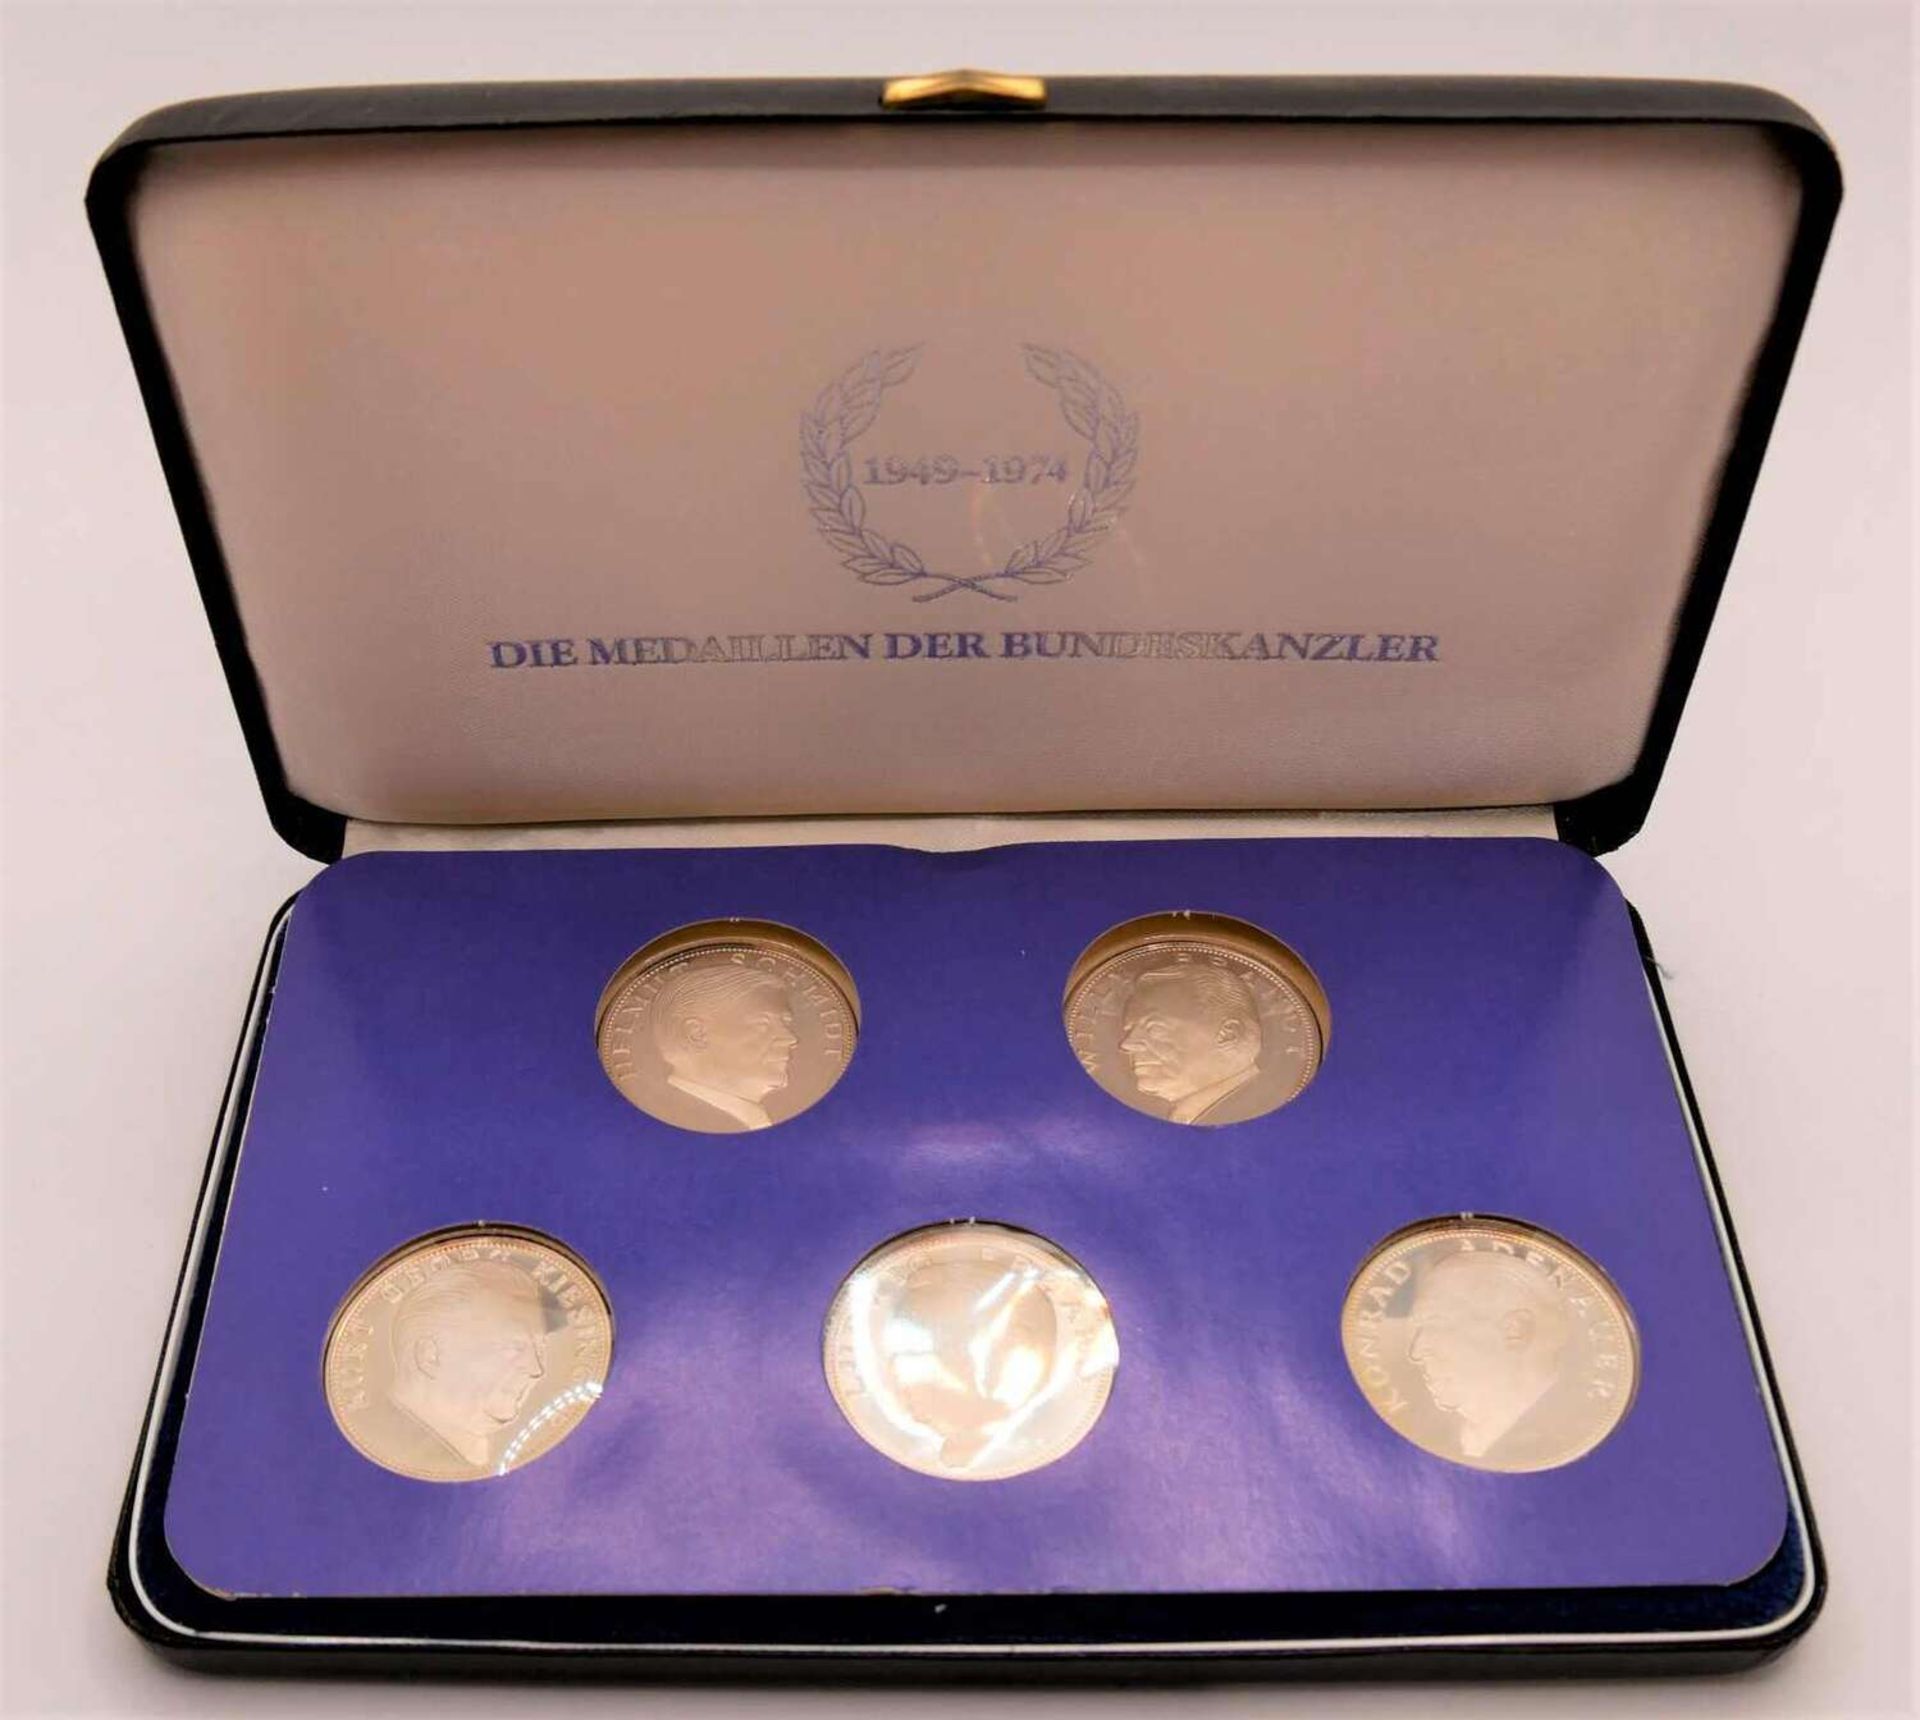 Die Medaillen der Bundeskanzler 1949 - 1974 - Silber 5x15g - 925er Silber in Original Schachtel.